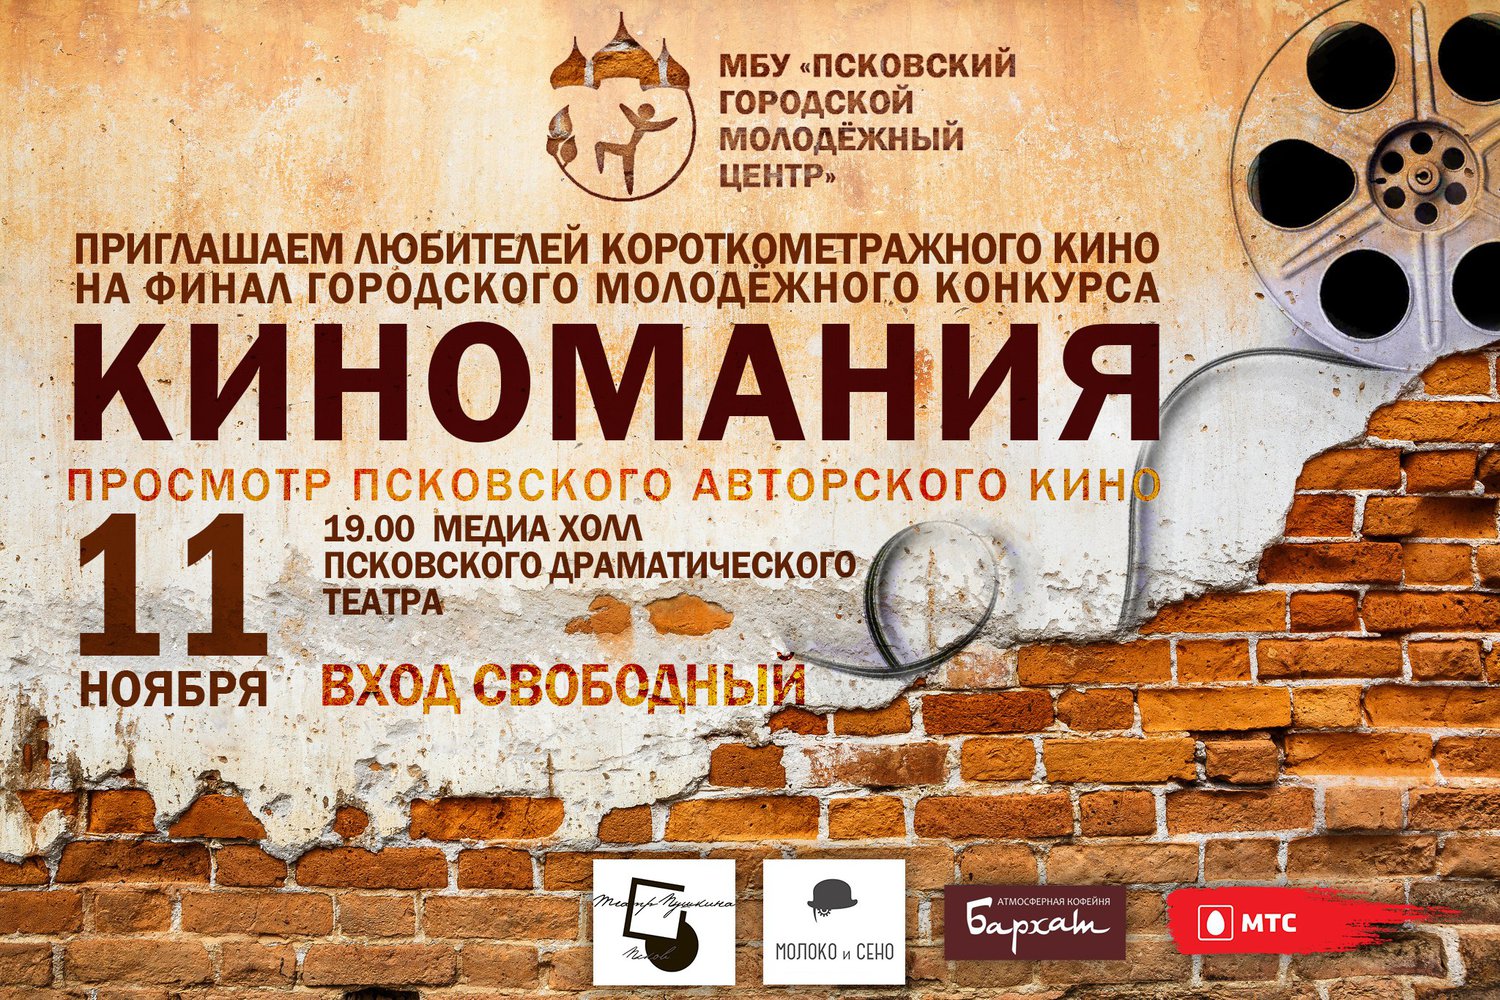 Молодёжный центр города Пскова приглашает всех любителей короткометражного кино на финал конкурса «Киномания - 2015», который состоится 11 ноября в 19:00 в медиахолле Псковского драматического театра.